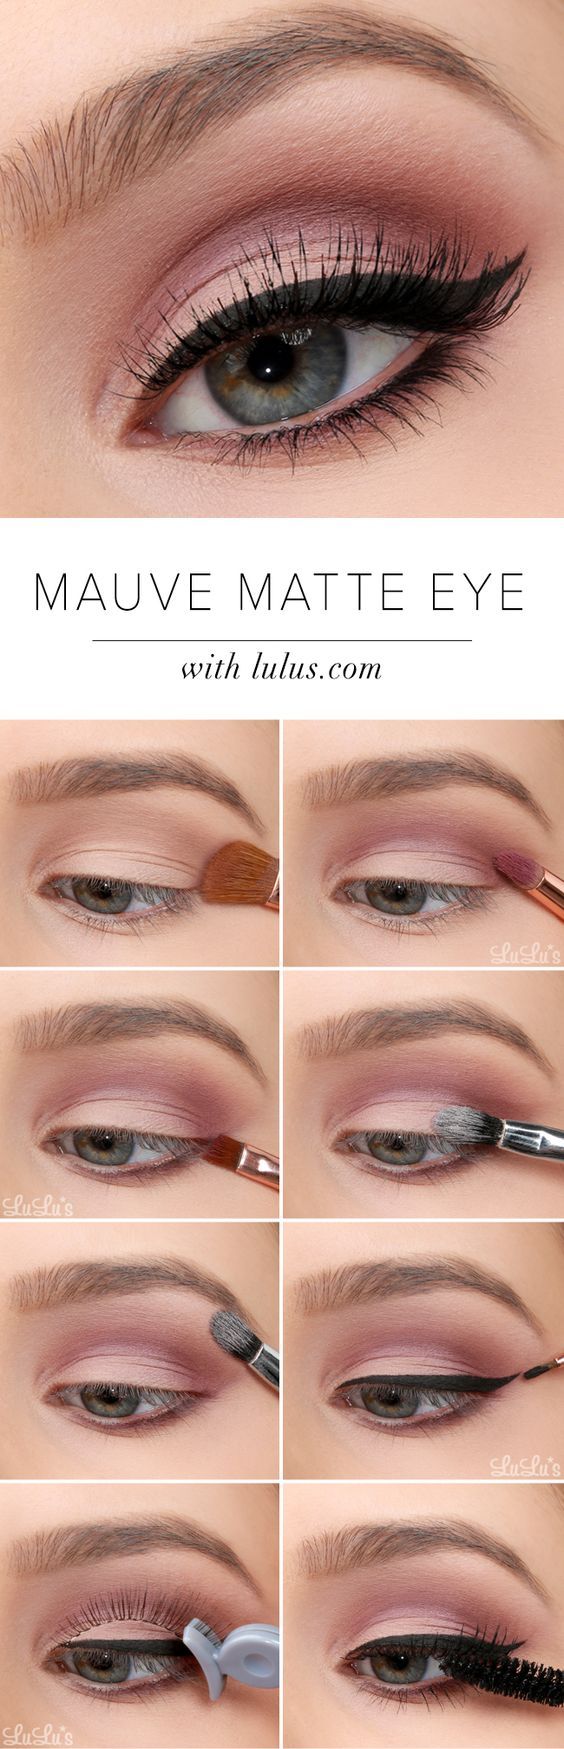 mauve-matte-eye-makeup via